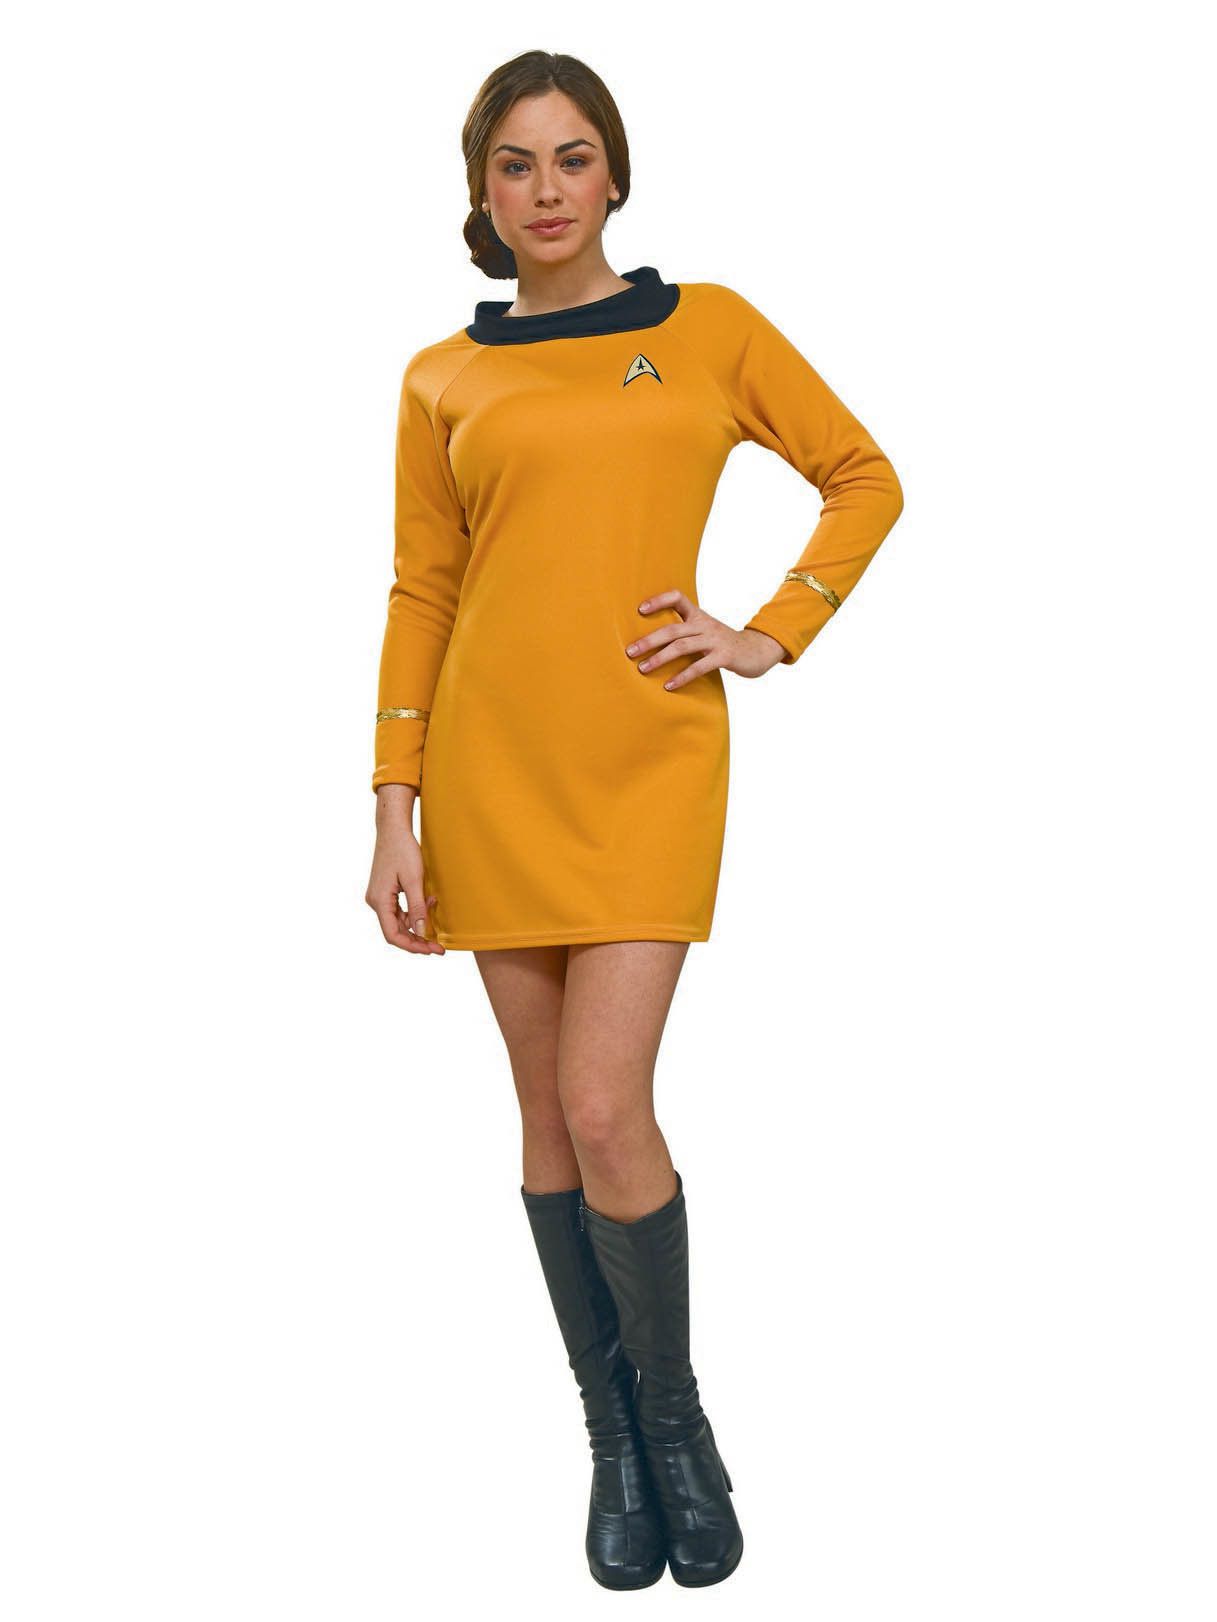 Women's Star Trek Command Uniform - Deluxe - costumes.com